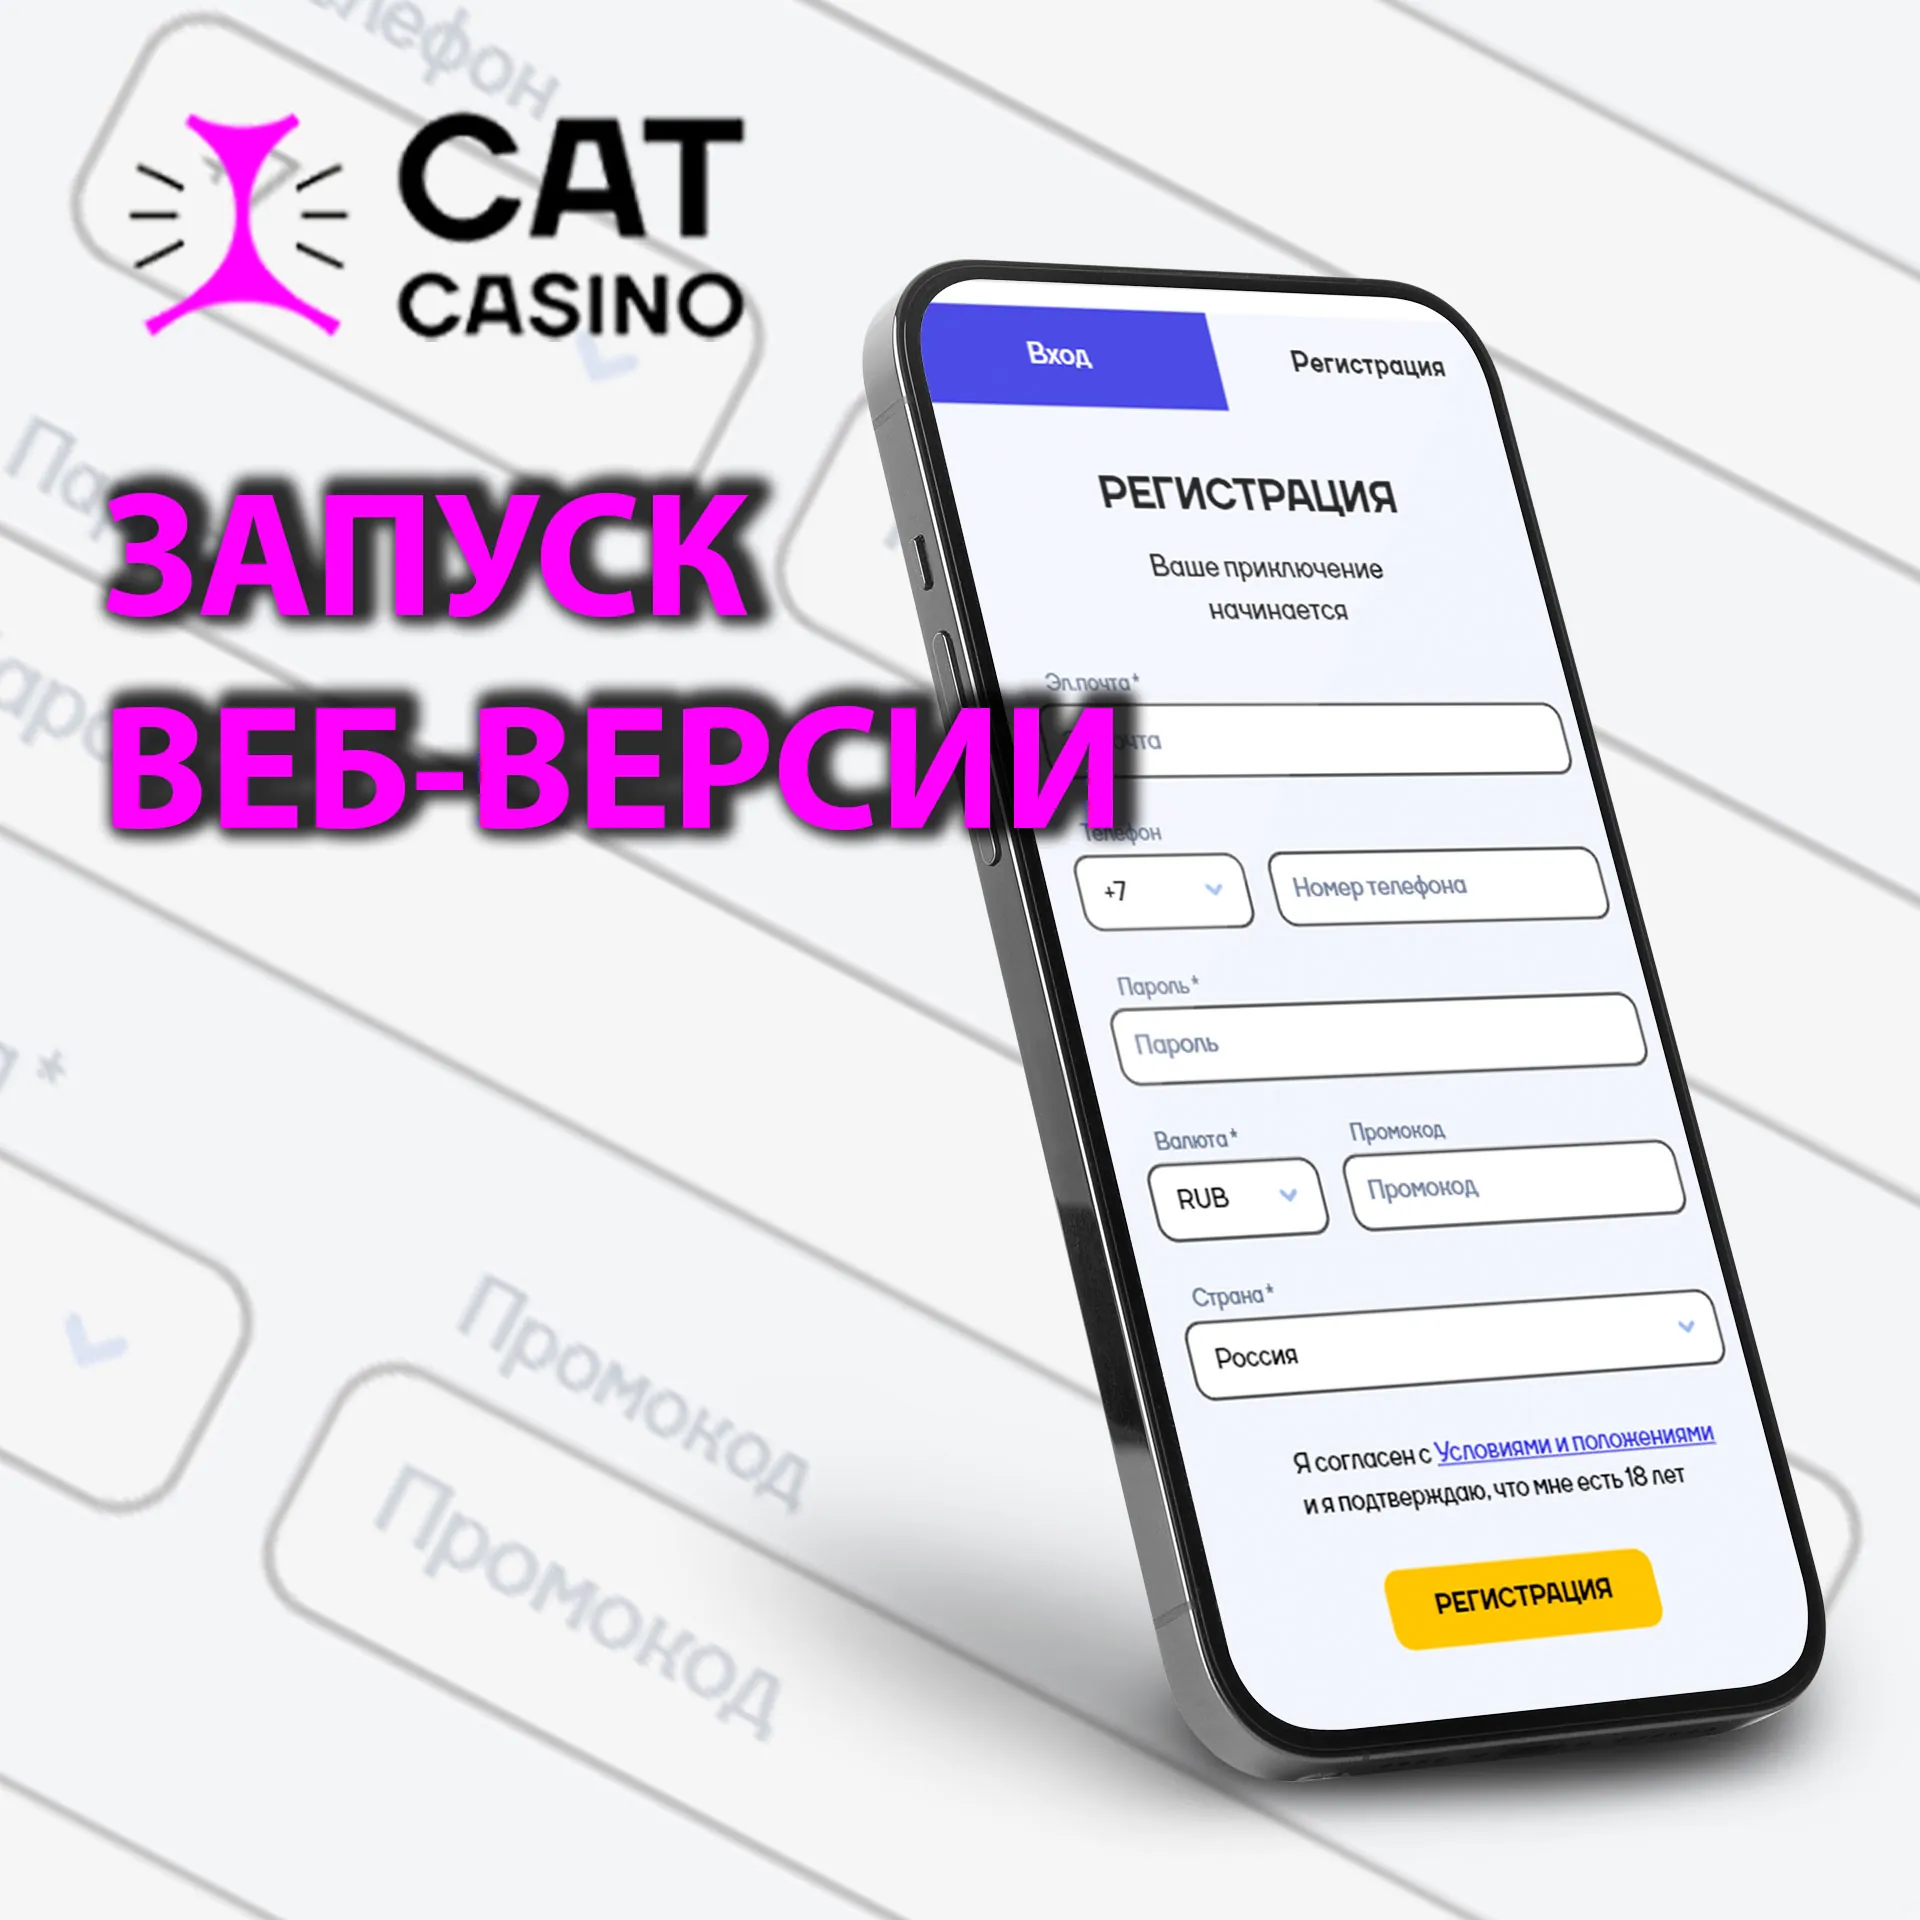 Создайте аккаунт на сайте Cat Casino, выберите любимый слот и начните игру